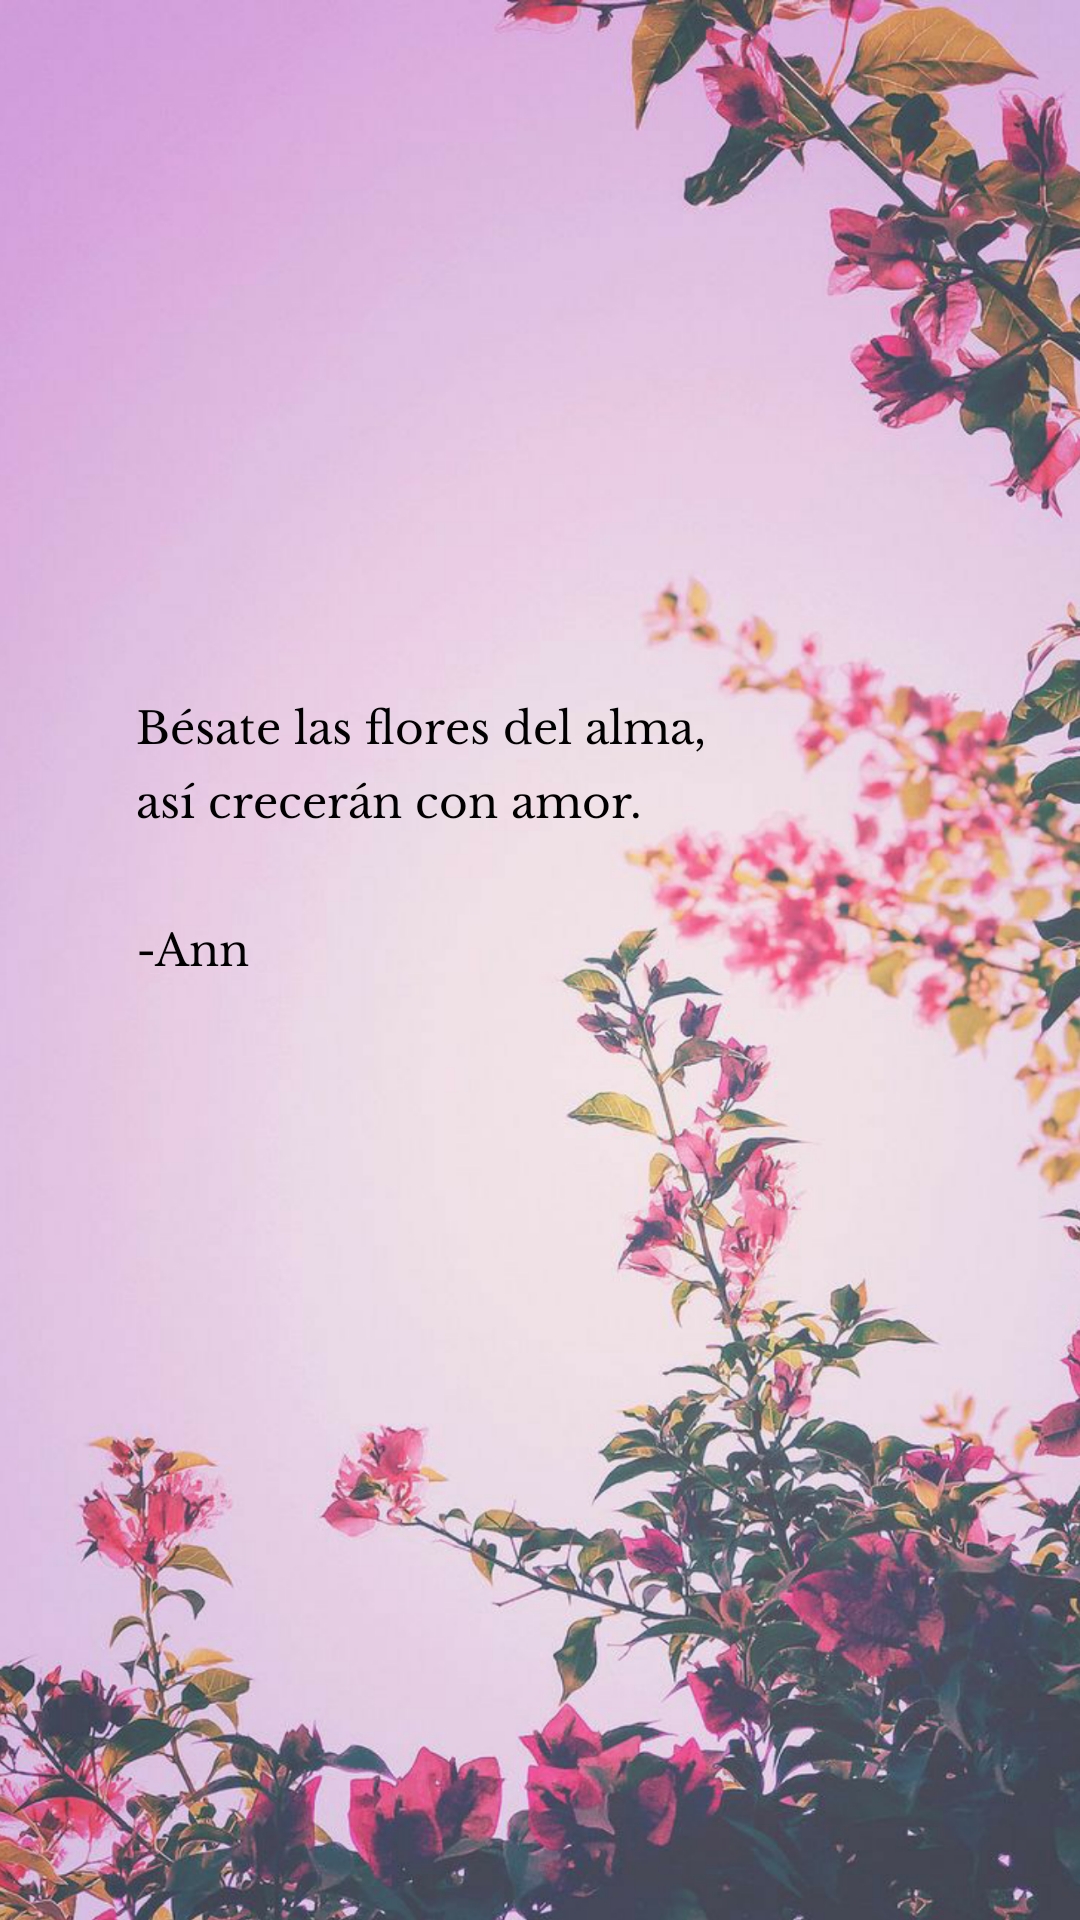 Bésate las flores del alma,
así crecerán con amor.

-Ann